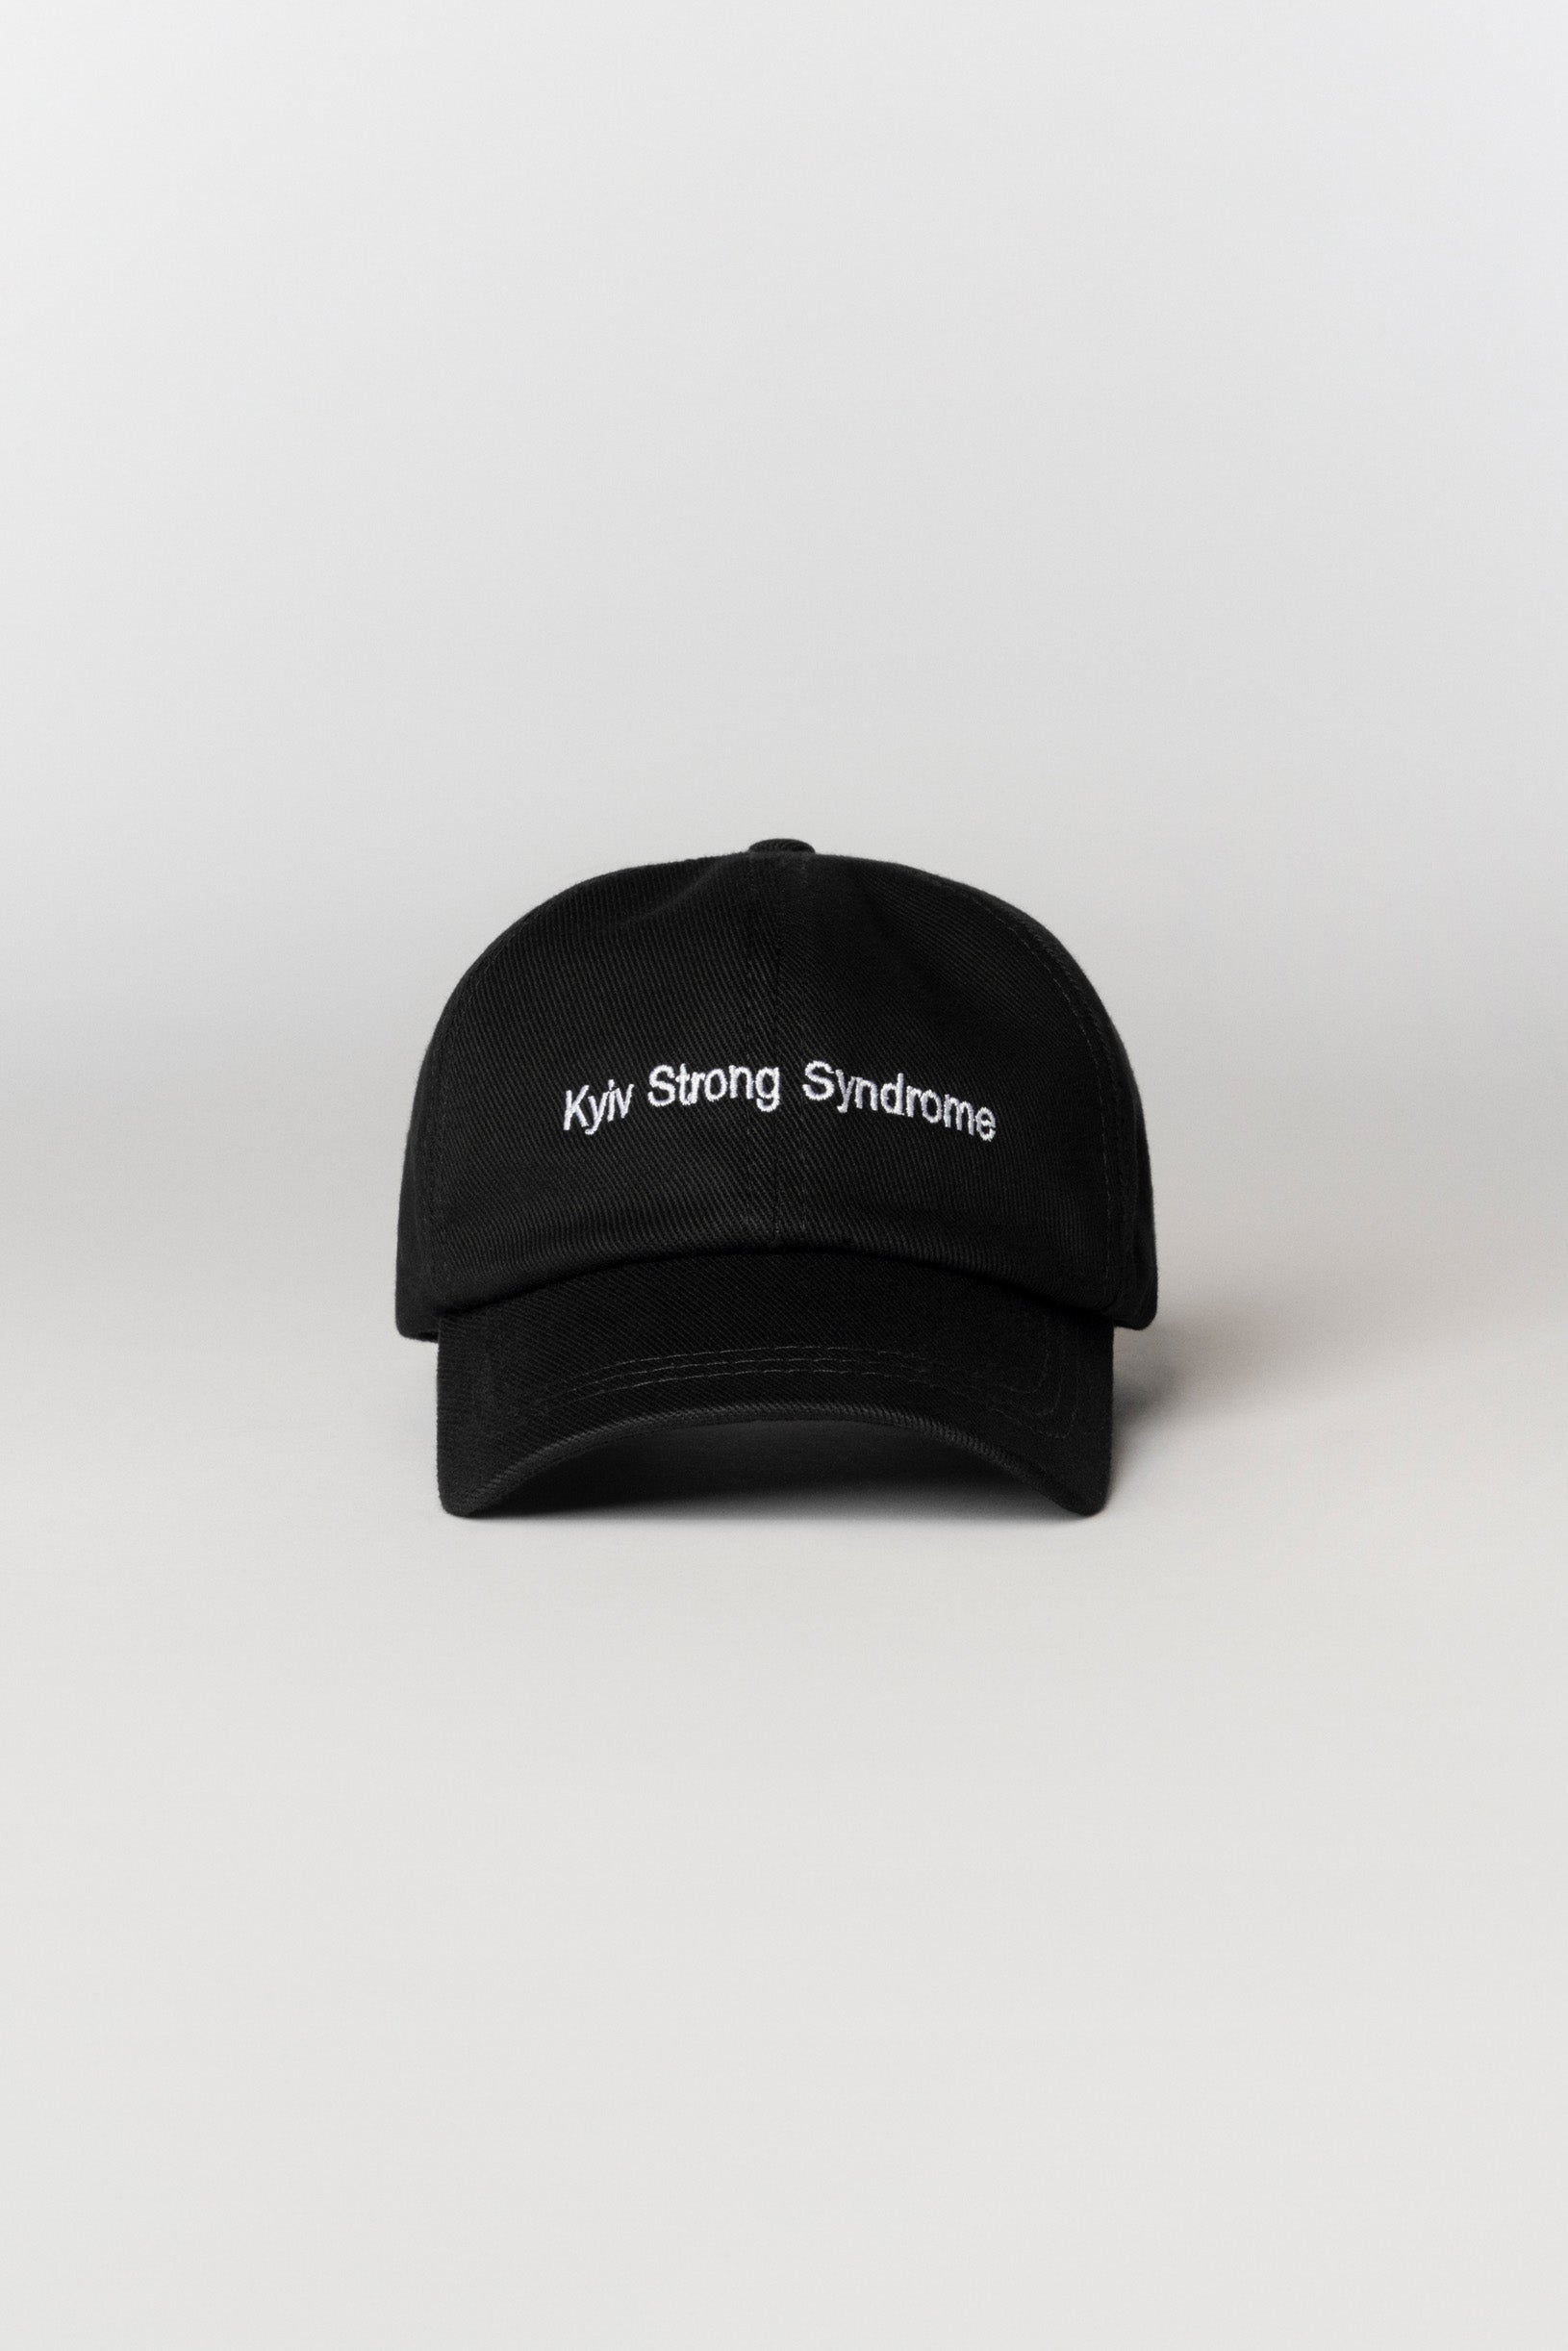 Kyiv Strong Syndrome cap